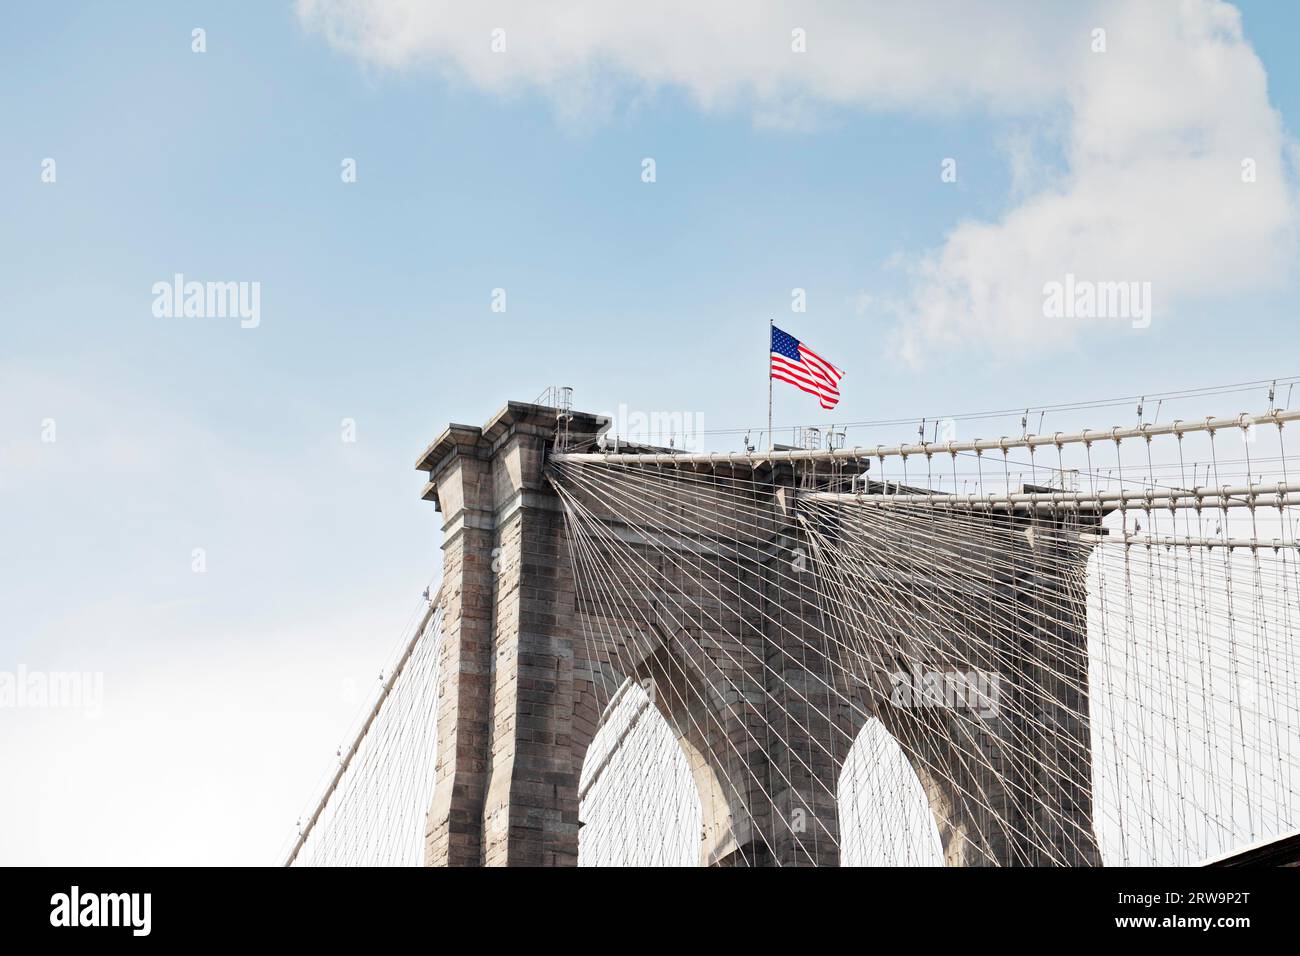 Dettaglio del Ponte di Brooklyn. Il ponte di Brooklyn è un ponte di New York ed è uno dei più antichi ponti sospesi degli Stati Uniti Foto Stock